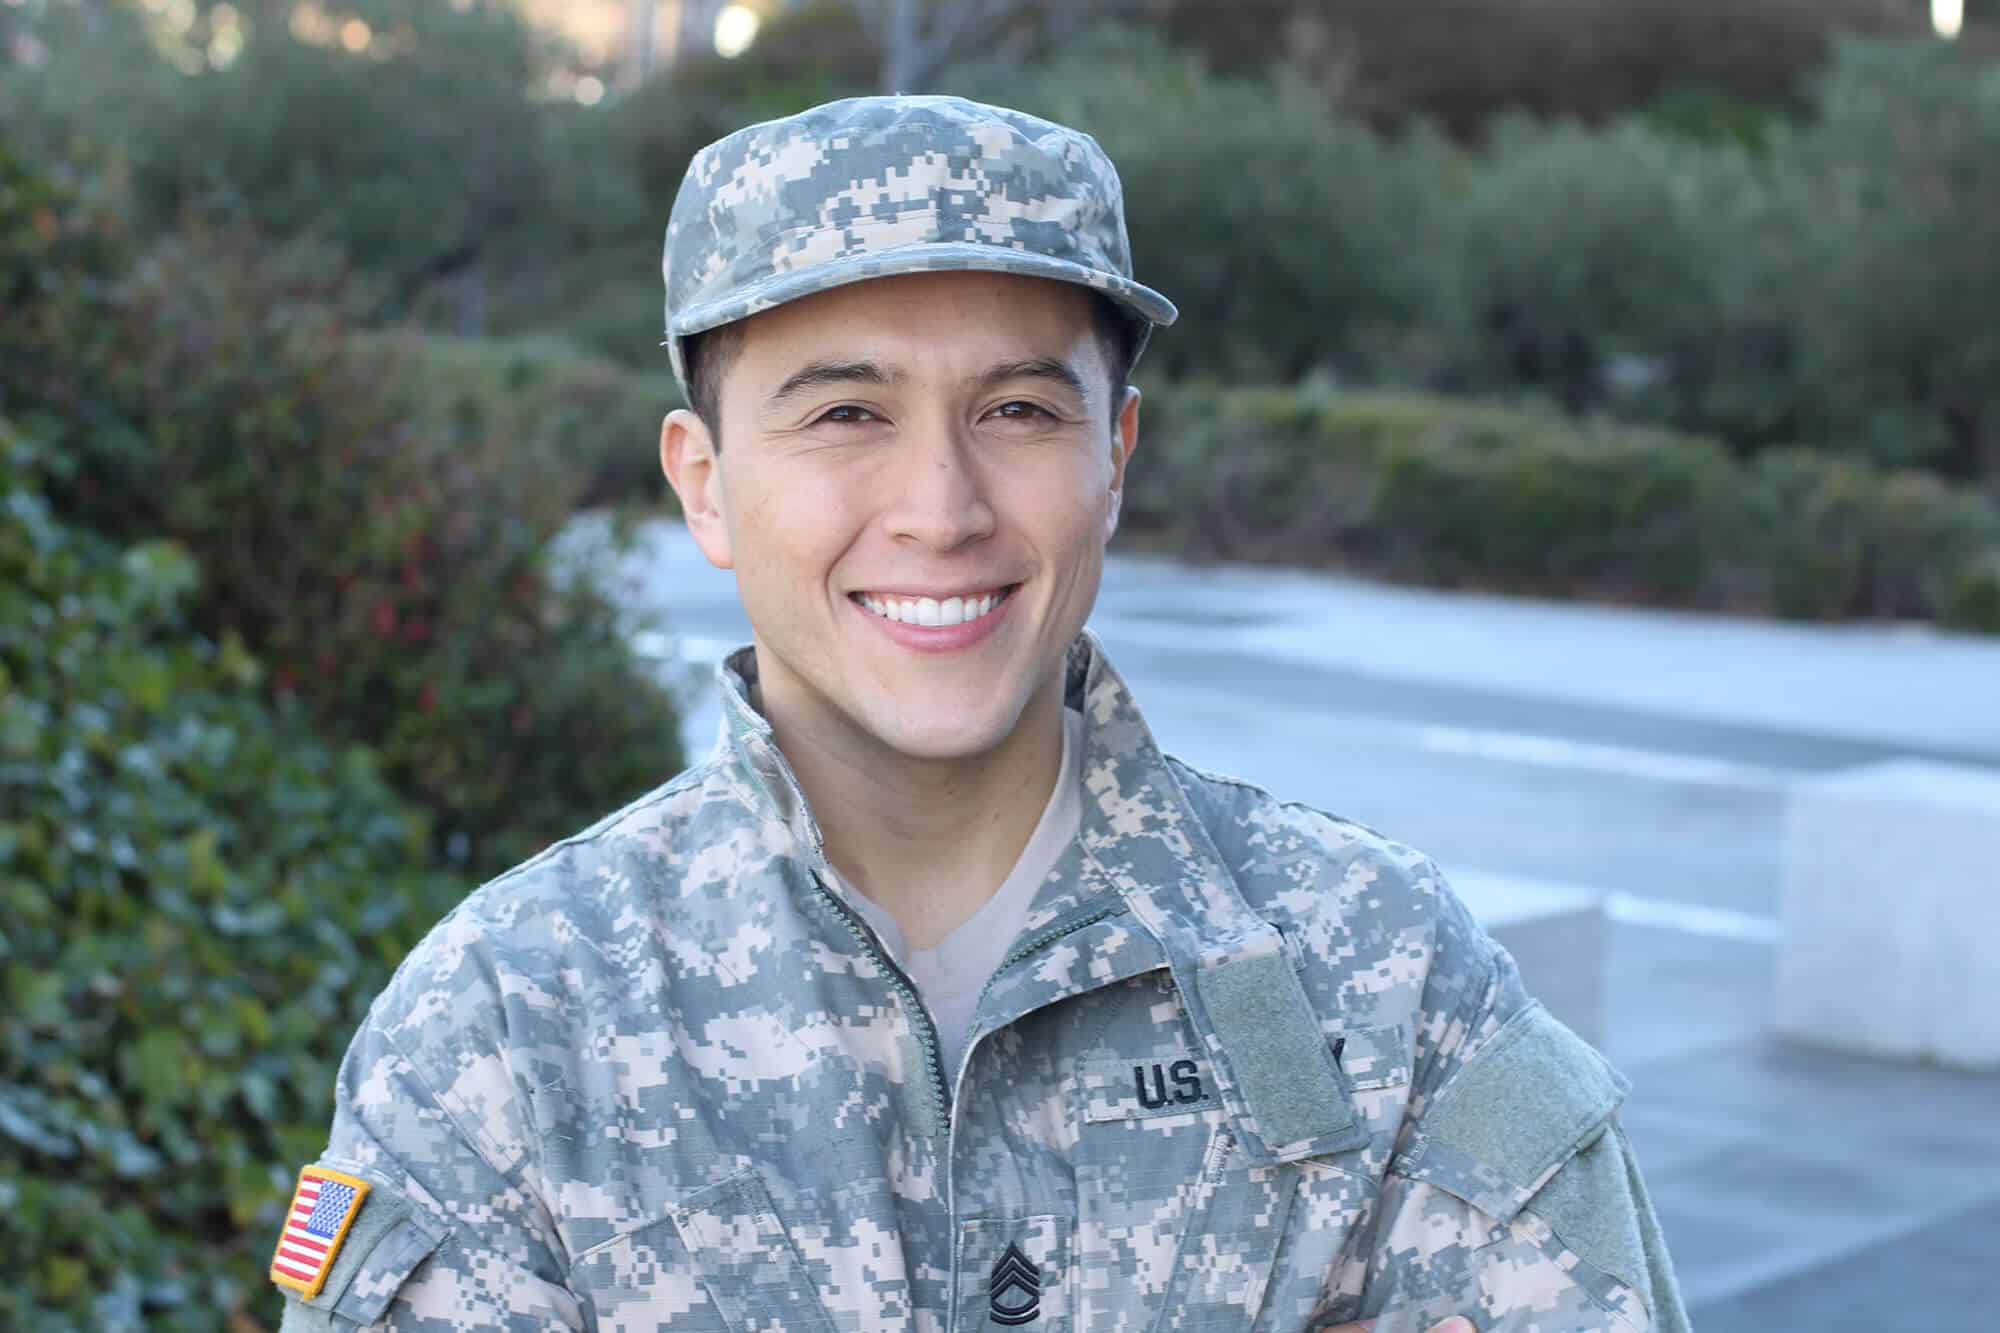 Military veteran smiling